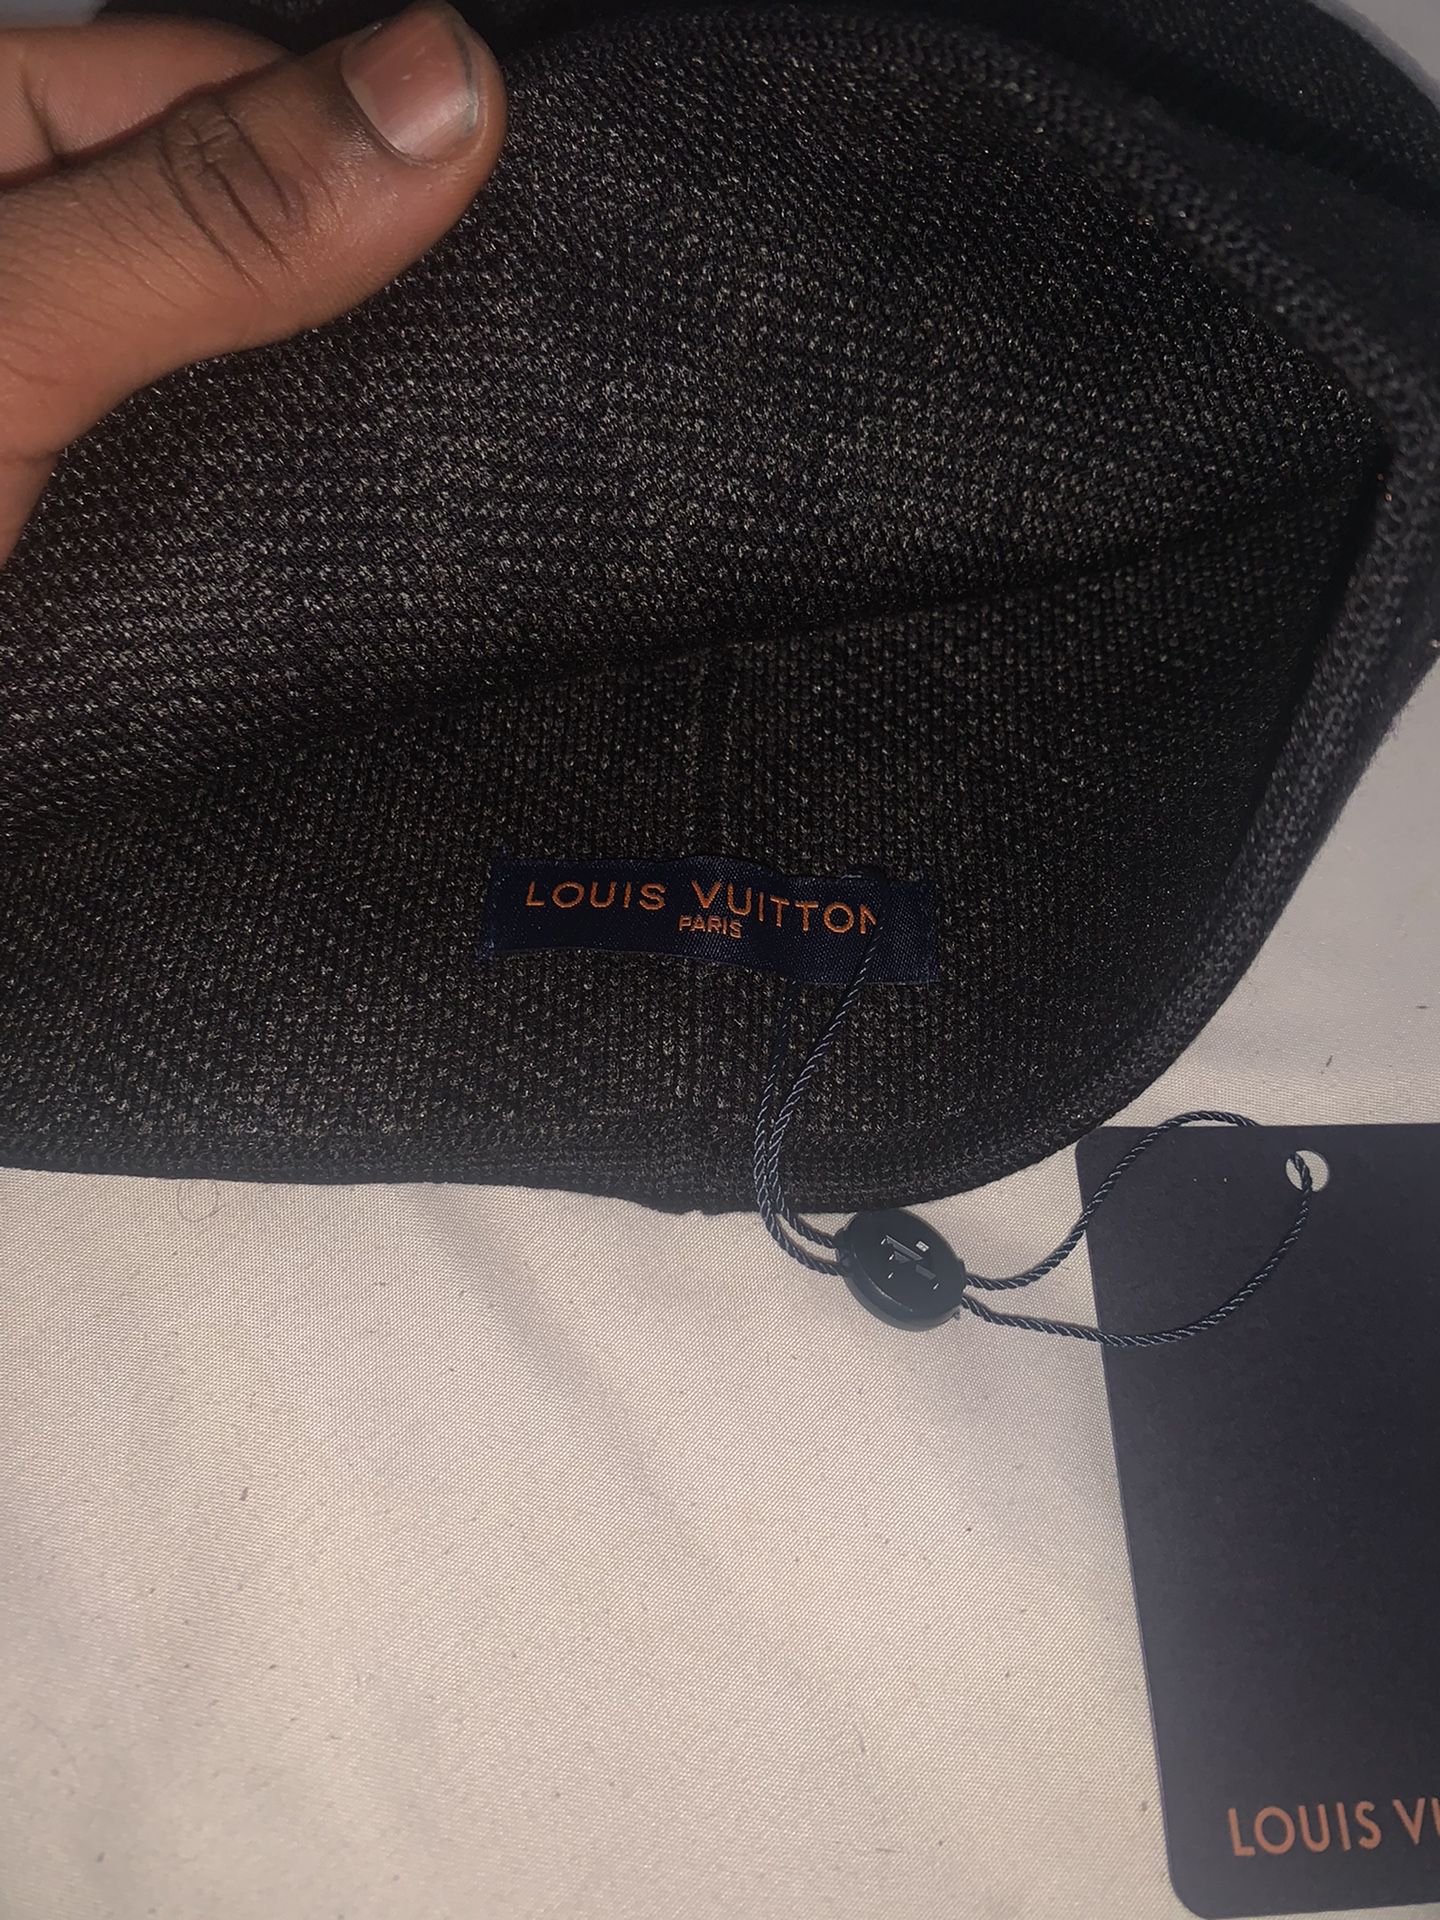 Louis Vuitton Dark Grey Neo Petit Damier Beanie for Sale in Dallas, TX -  OfferUp